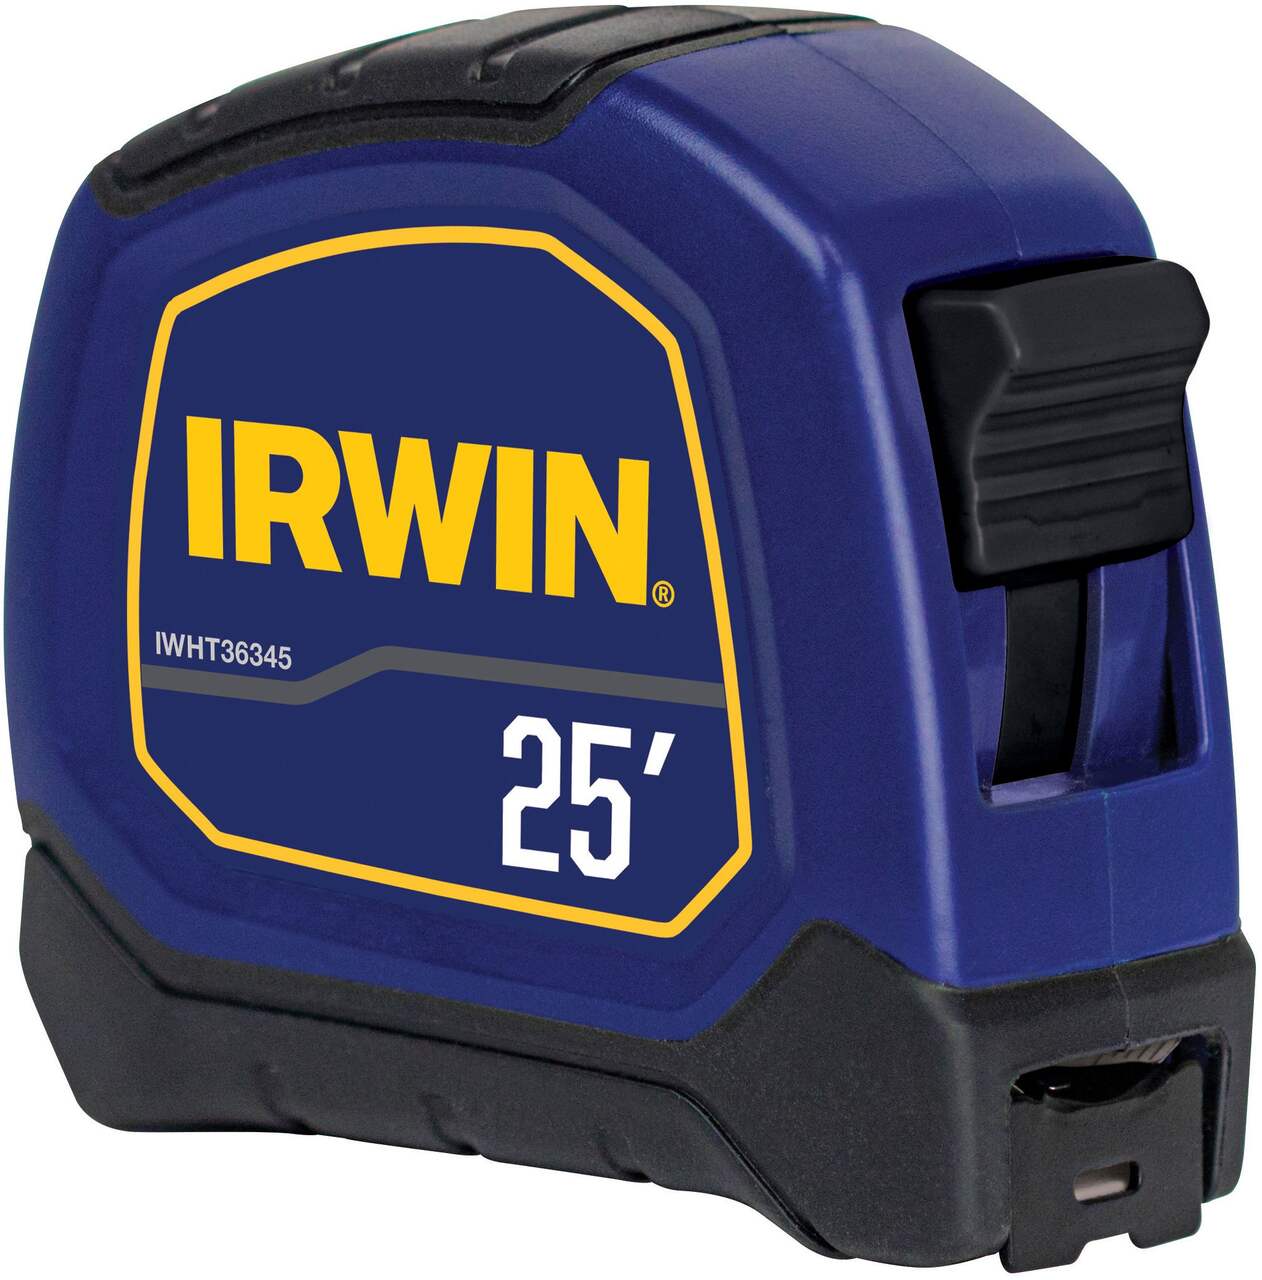 IRWIN IWHT36345 Bi-Material Tape Measure, 25-ft